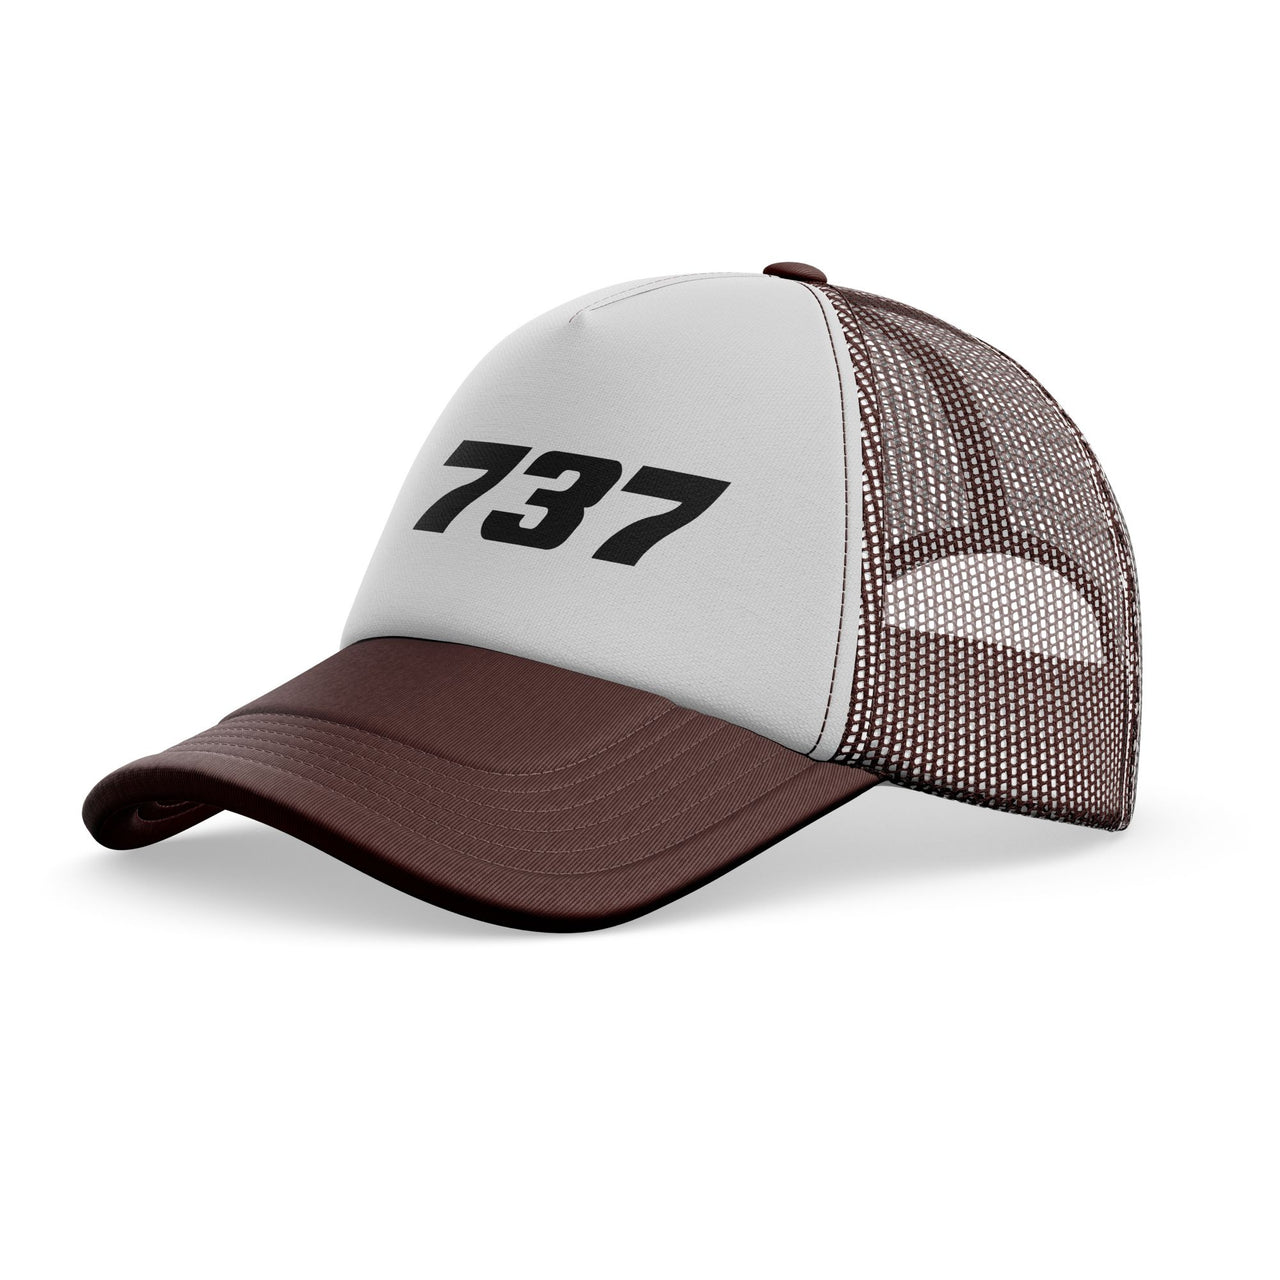 737 Flat Text Designed Trucker Caps & Hats